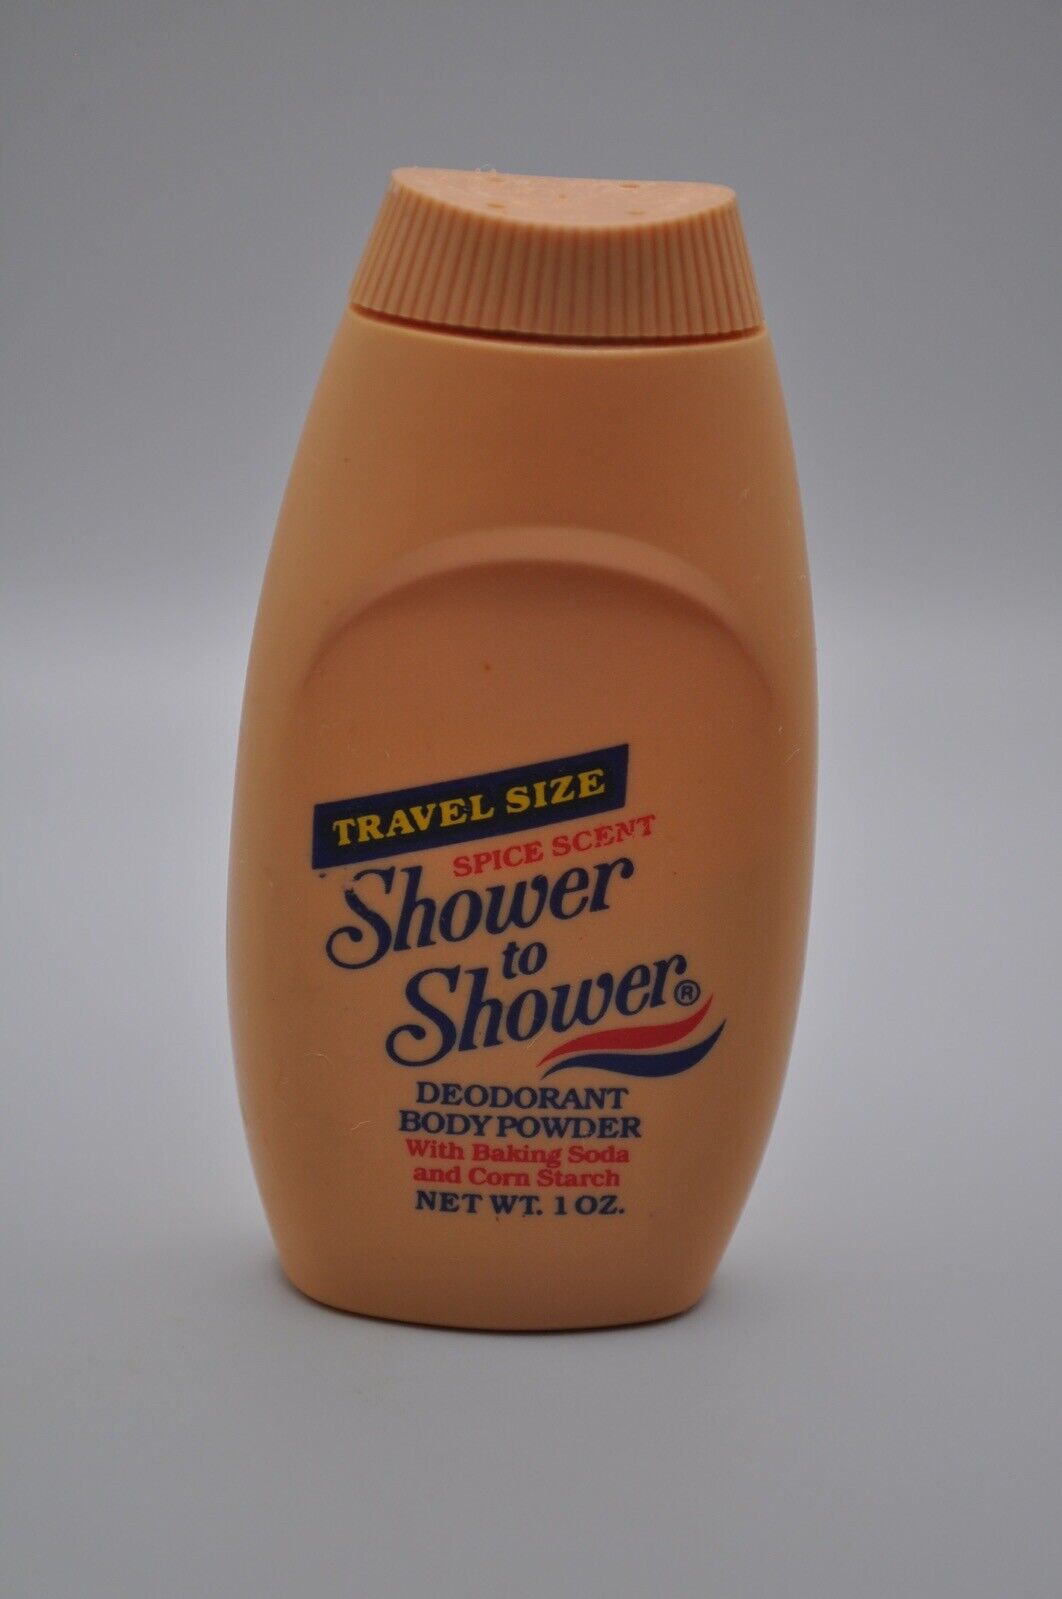 Vintage Shower to Shower Spice Scent Travel Size Bottle Plastic Prop